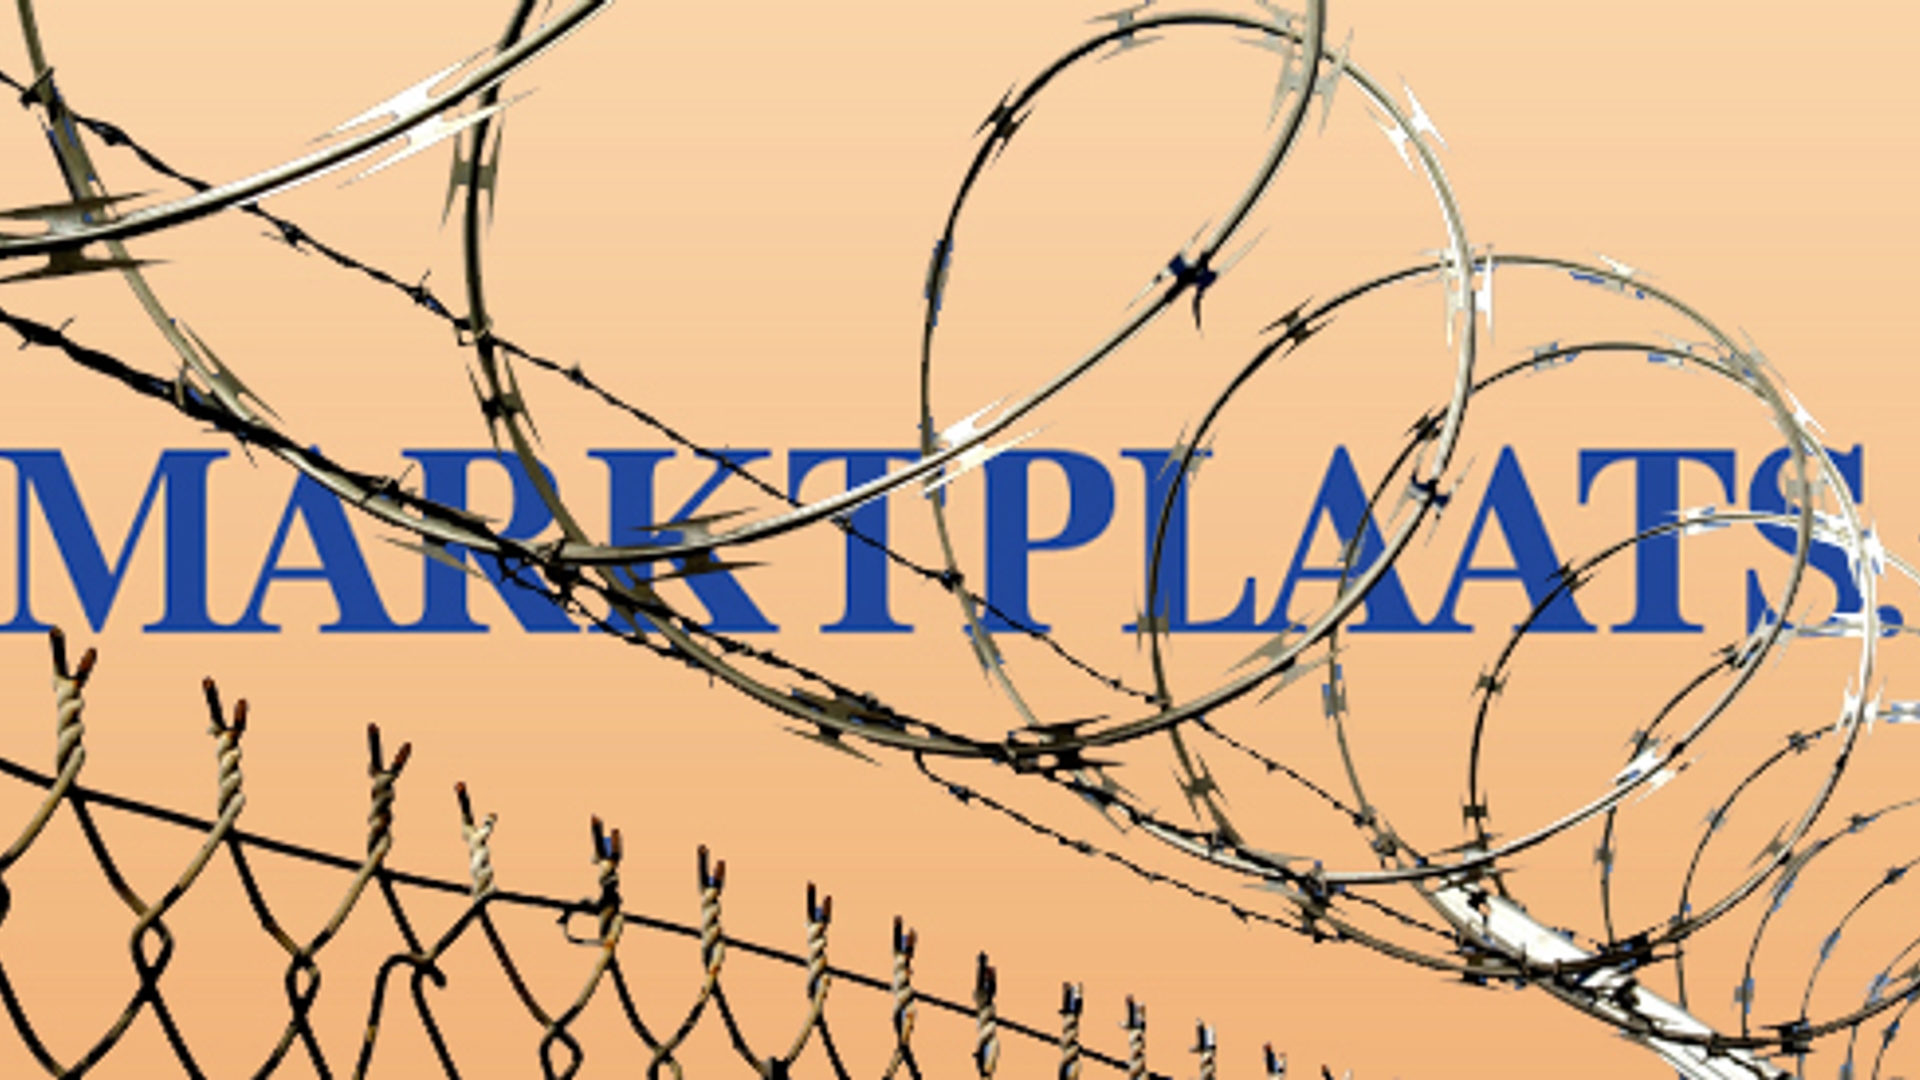 gevangenis-logo_marktplaats.jpg